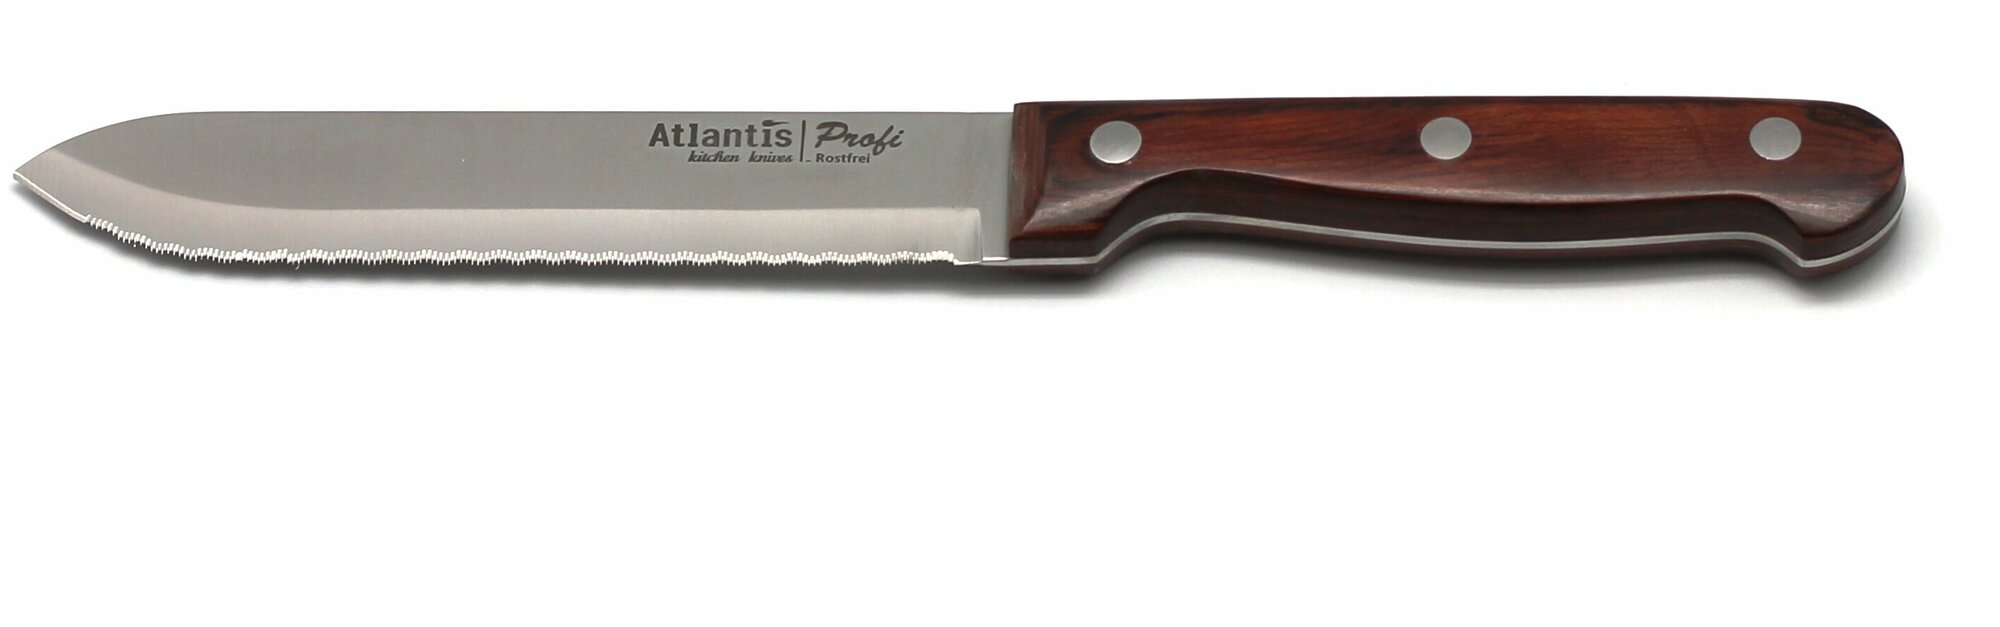 Нож для томатов "Atlantis" 14см, коричневый, 24415-SK